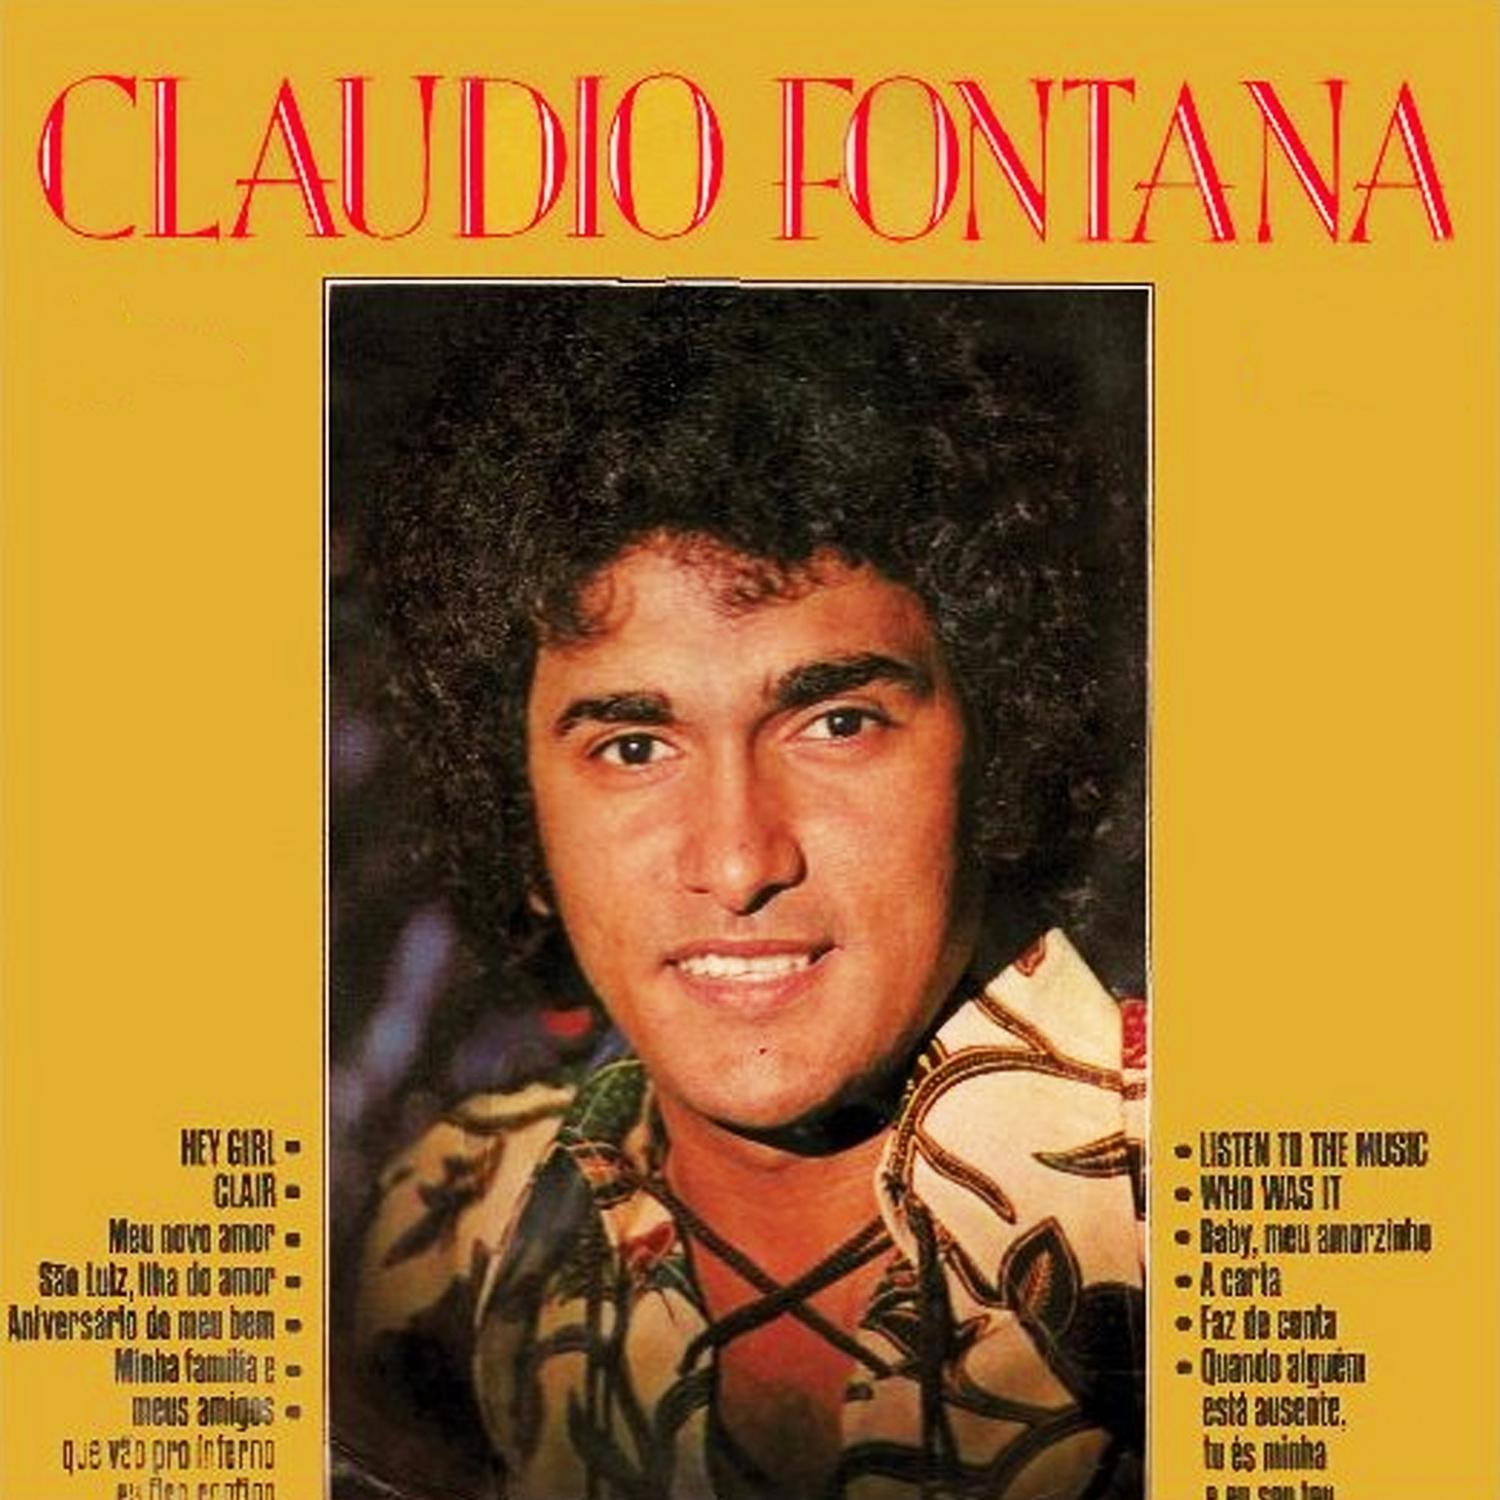 Claudio Fontana - Aniversário do Meu Bem